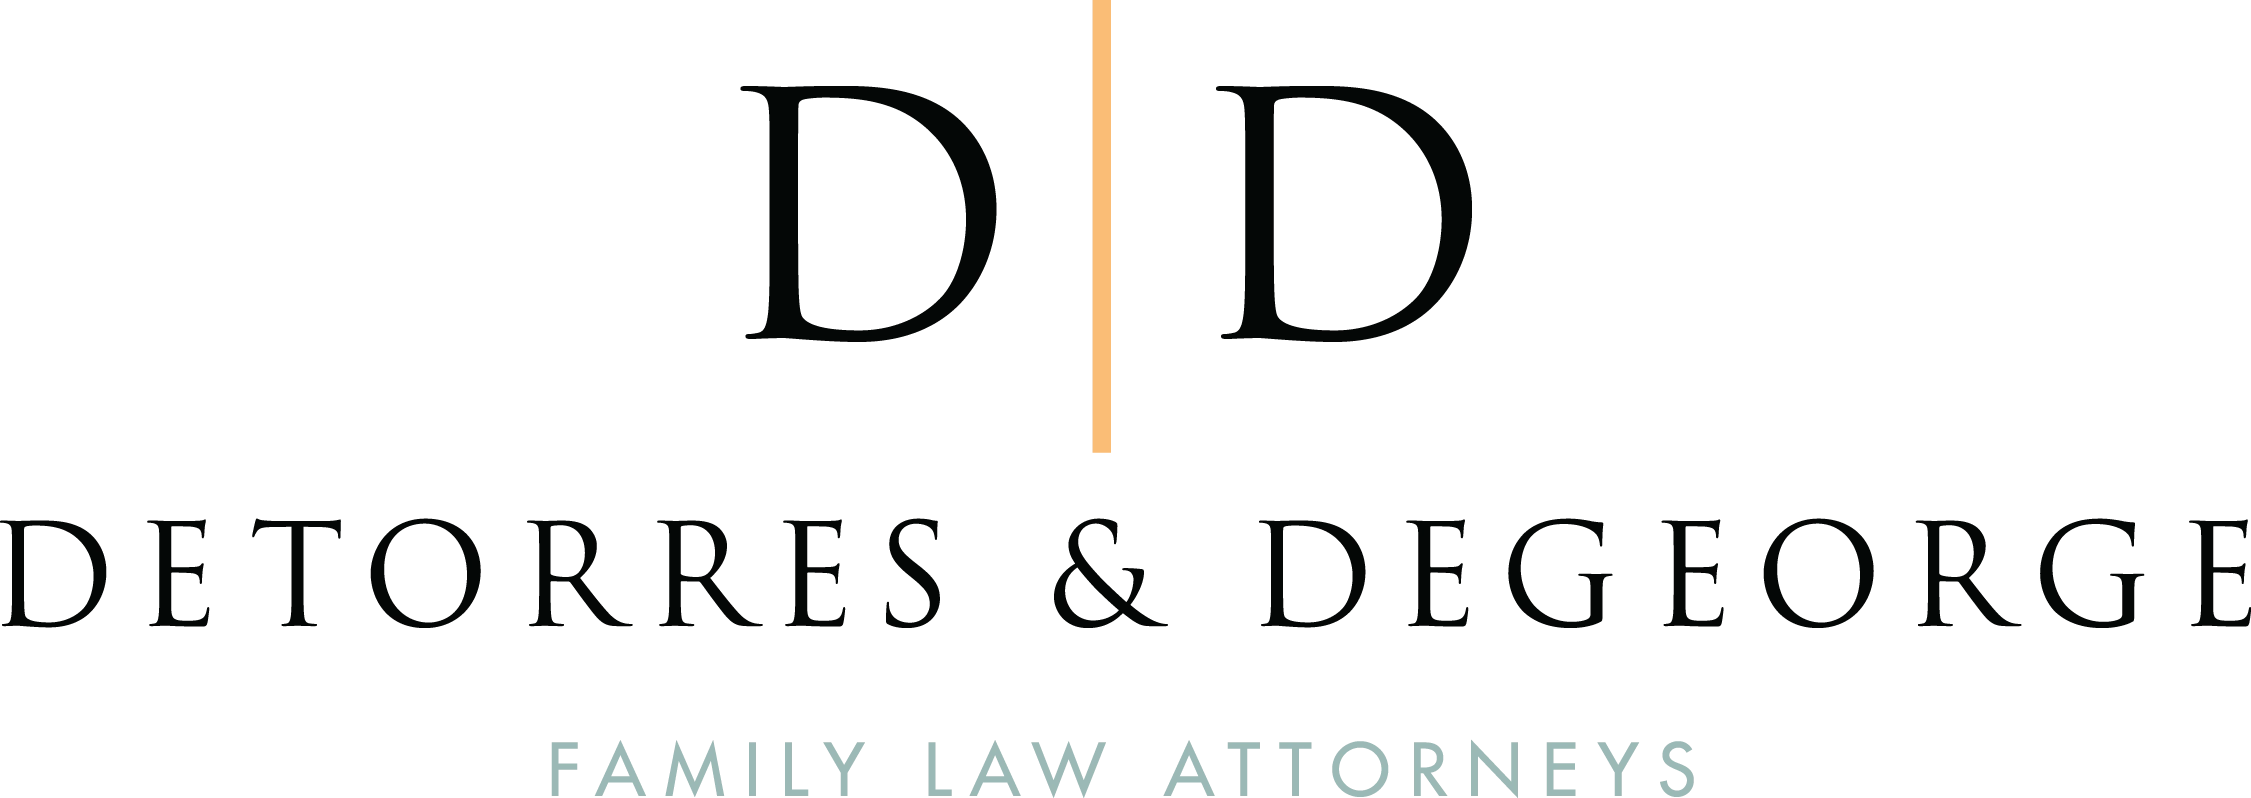 D & D Family Law